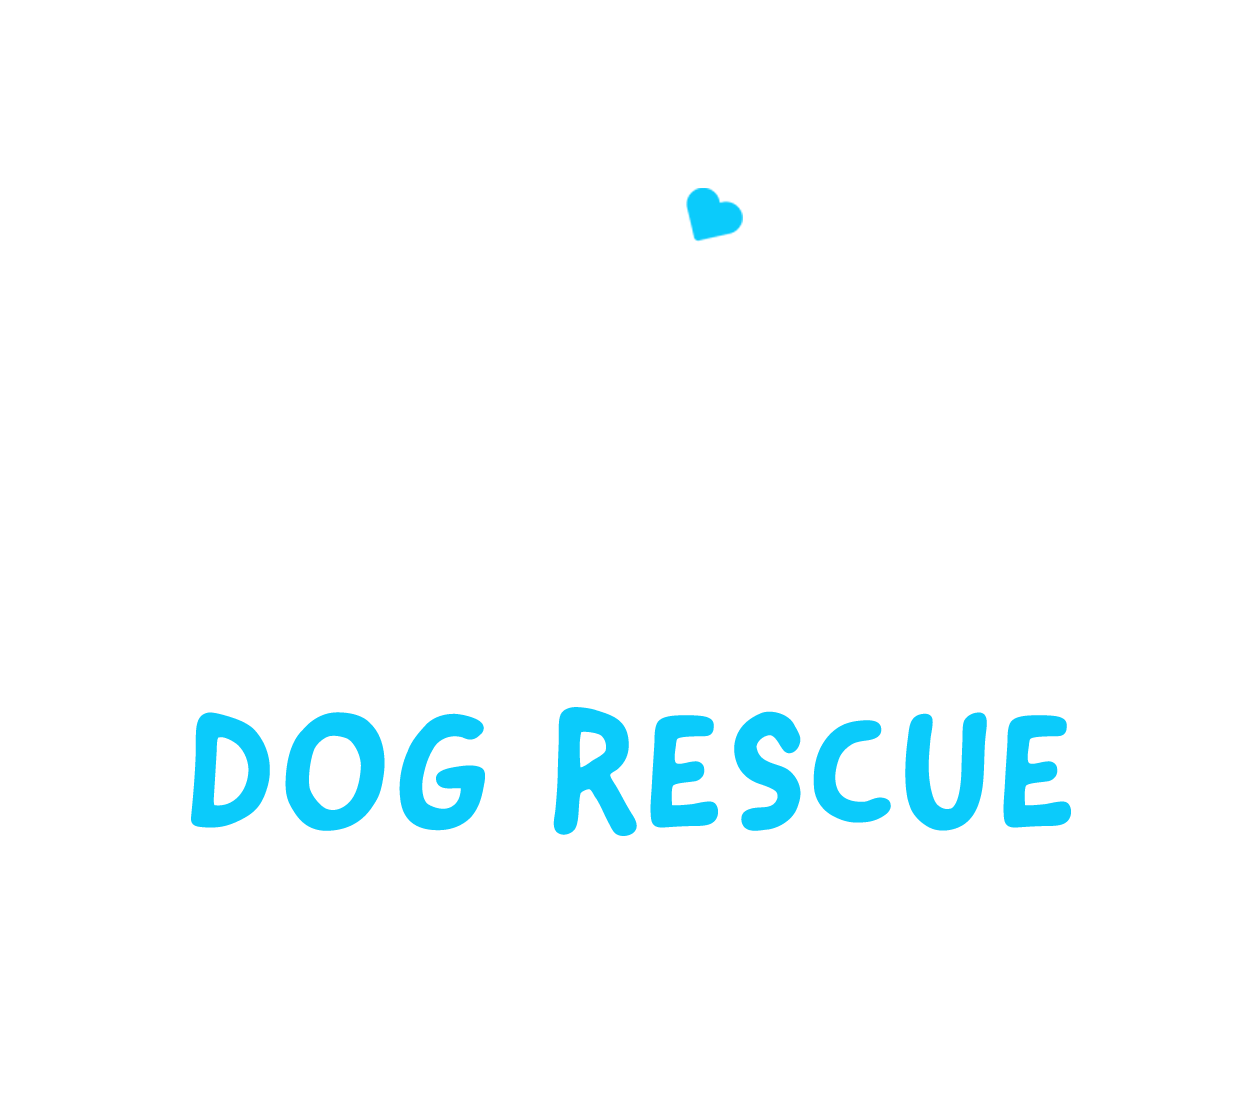 Dog Rescue Newcastle